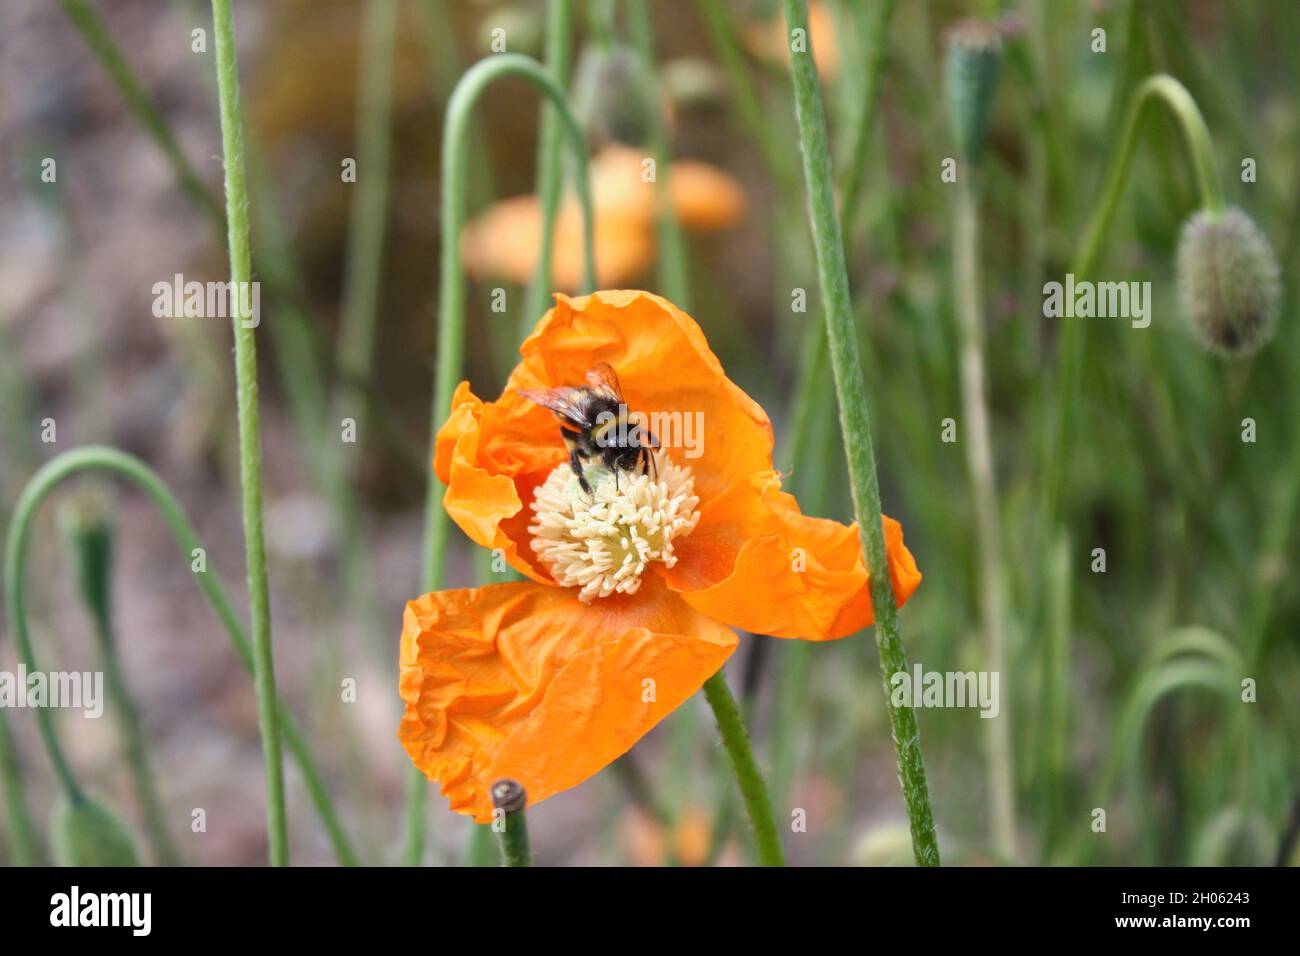 A bumble bee pollinates an orange poppy. Stock Photo